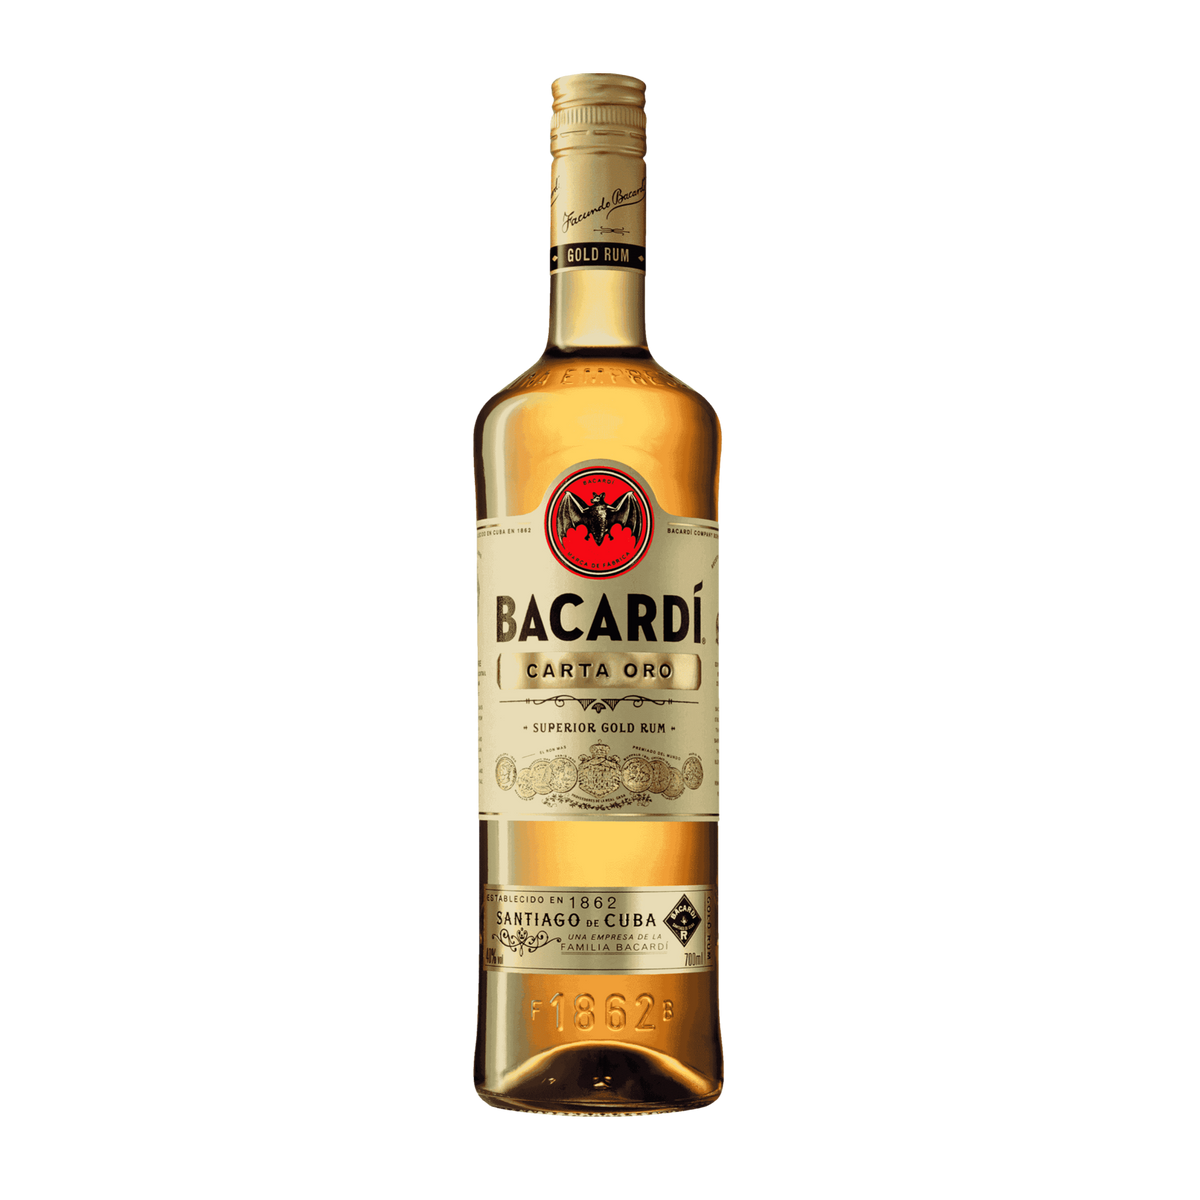 Bacardi Carta Oro Gold Rum 700ml